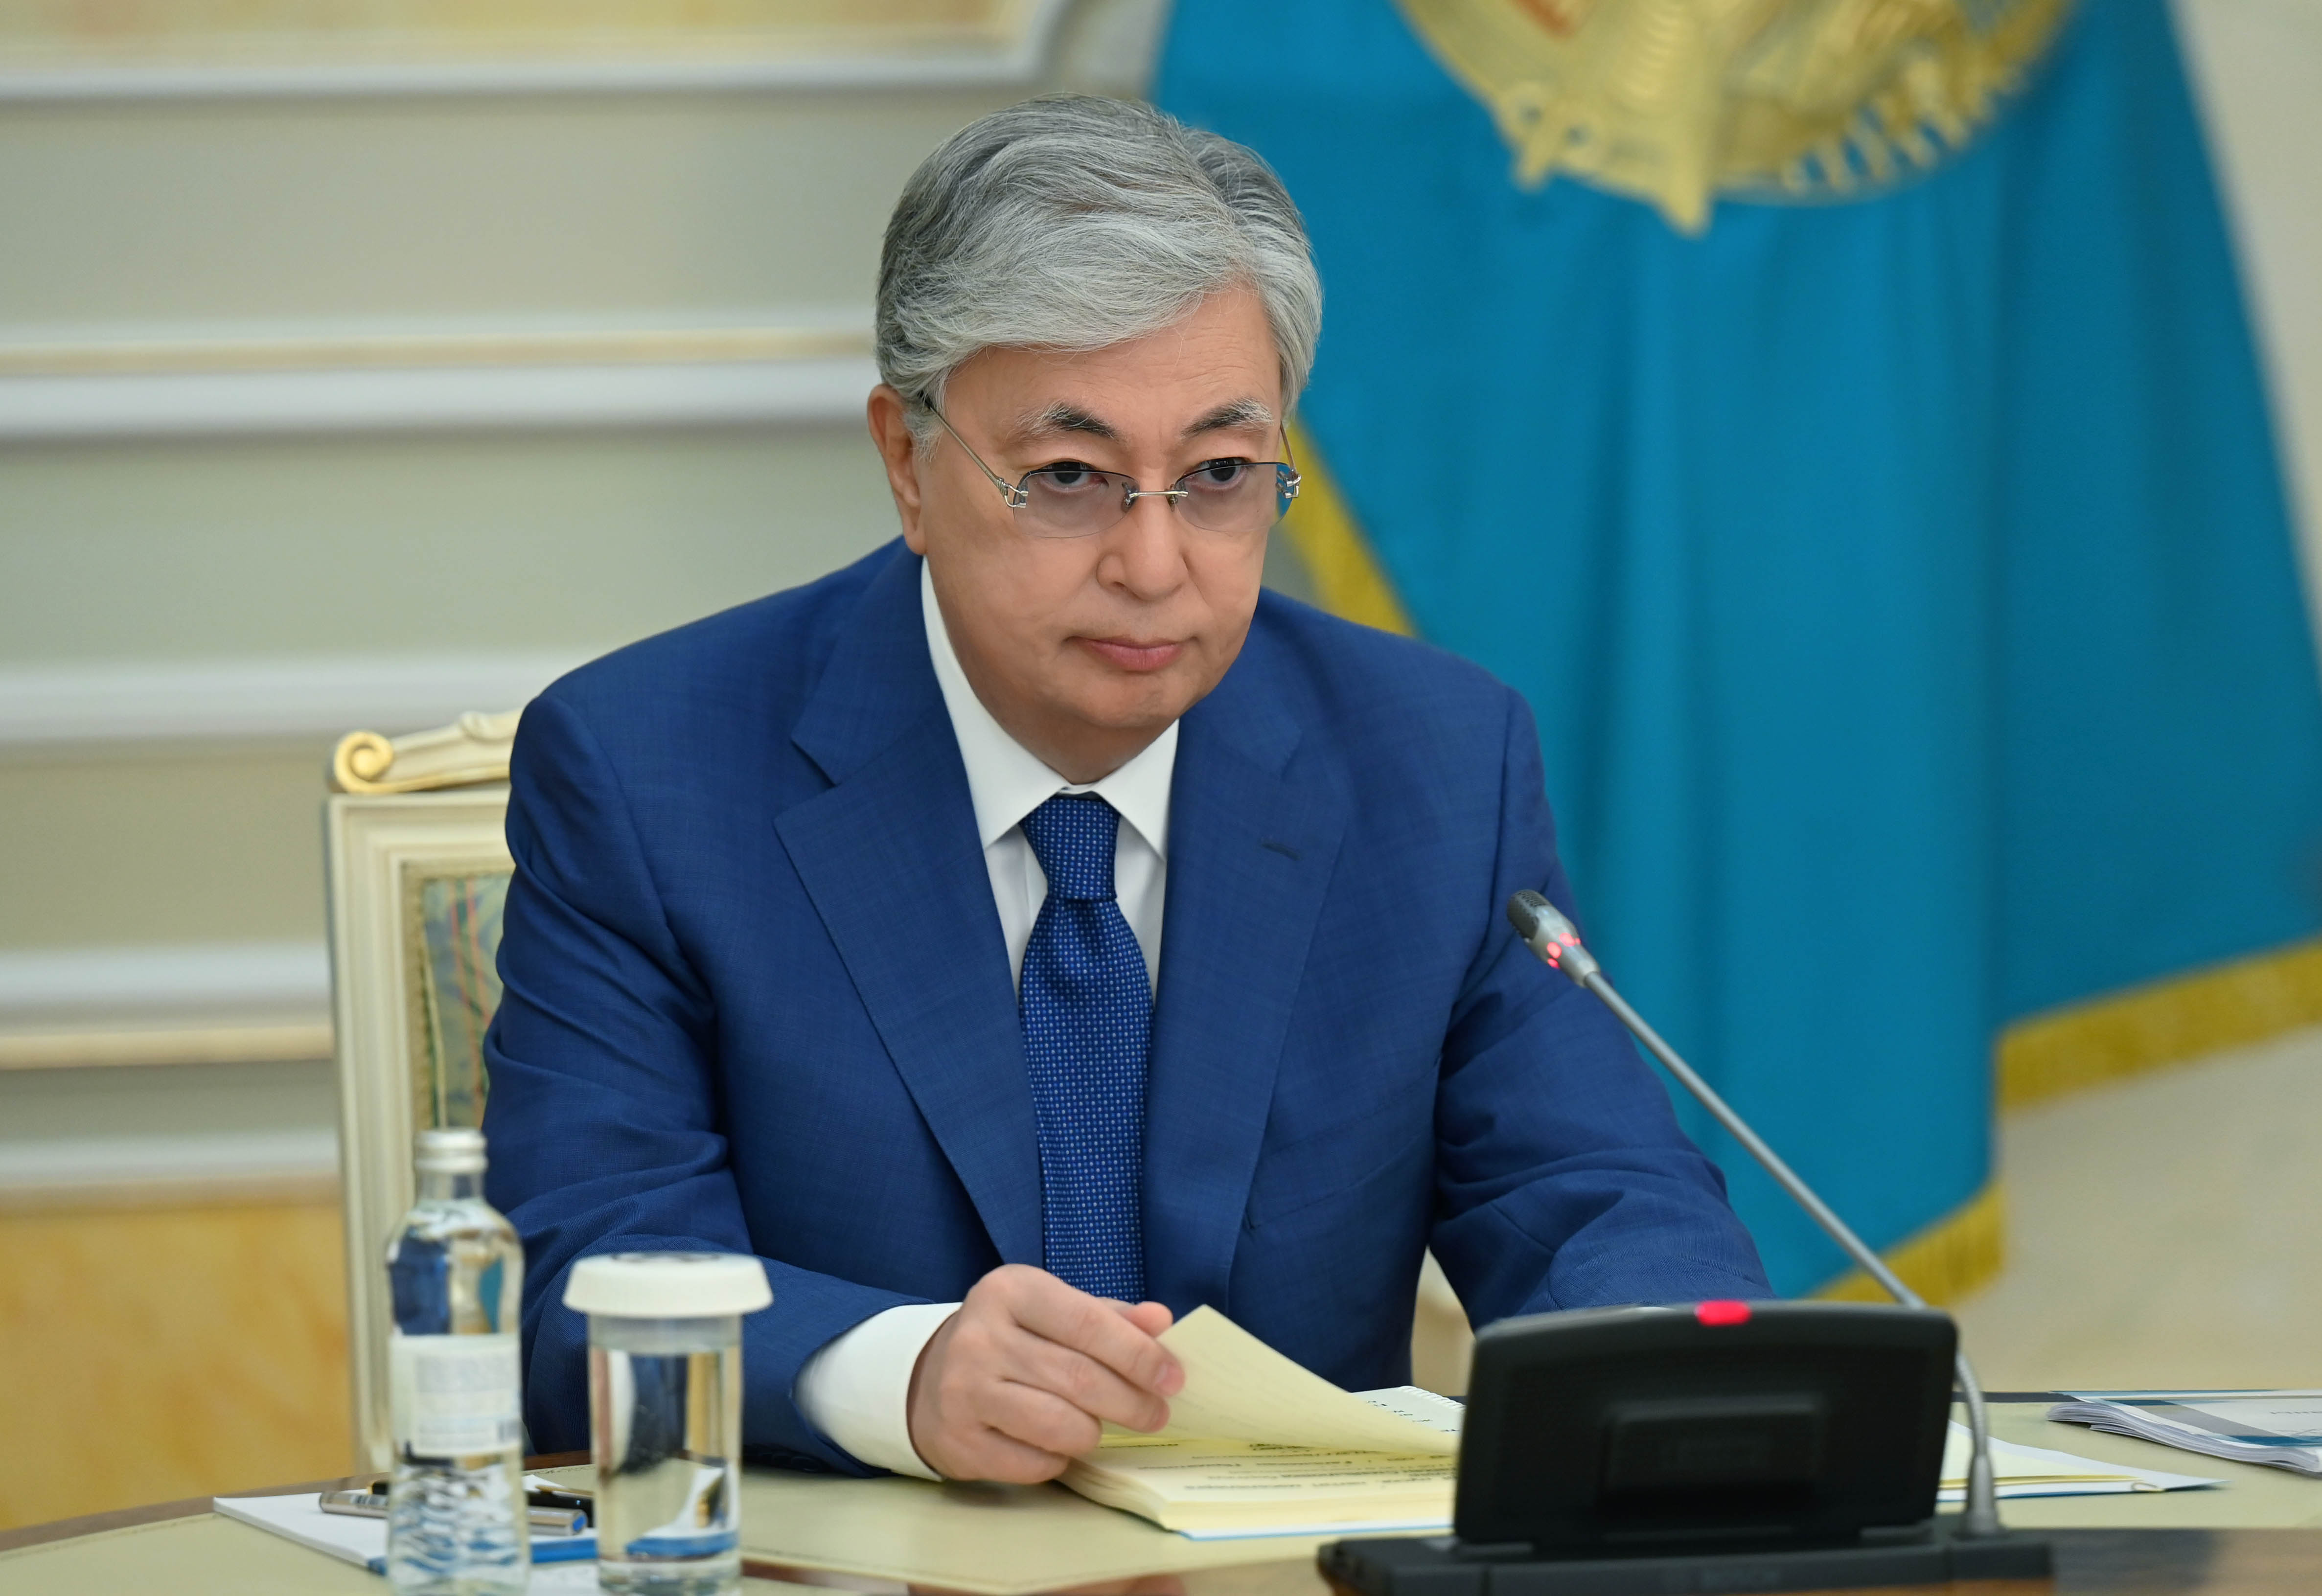 Мемлекет басшысы Қасым-Жомарт Тоқаев: Үкімет айтылған сыннан қорытынды шығаруға тиіс